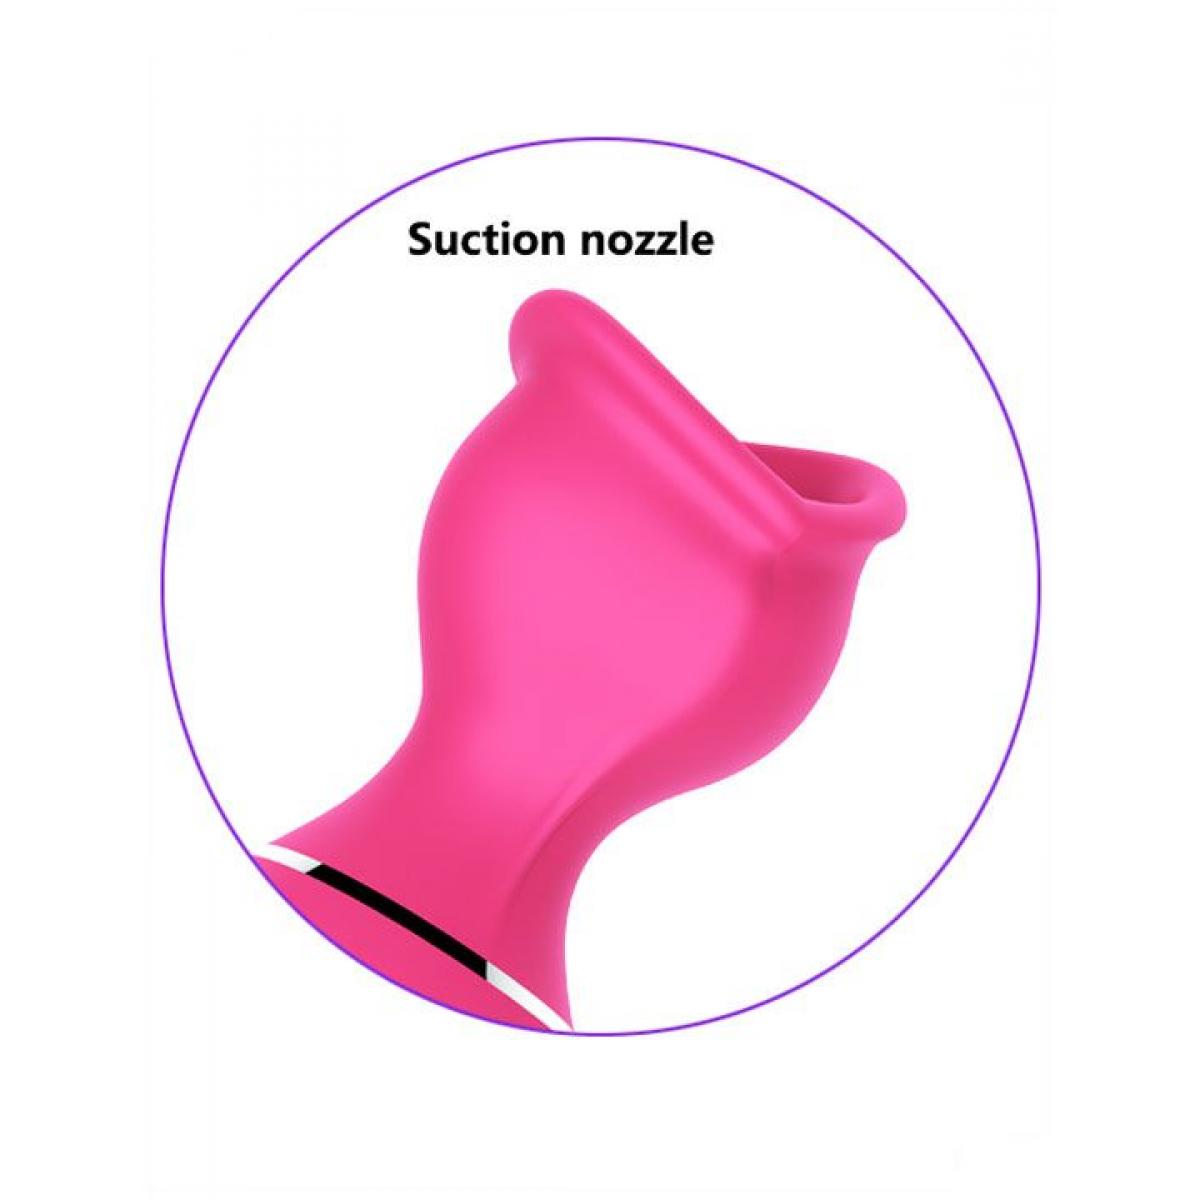 Розовый вакуумный стимулятор клитора Lip Love